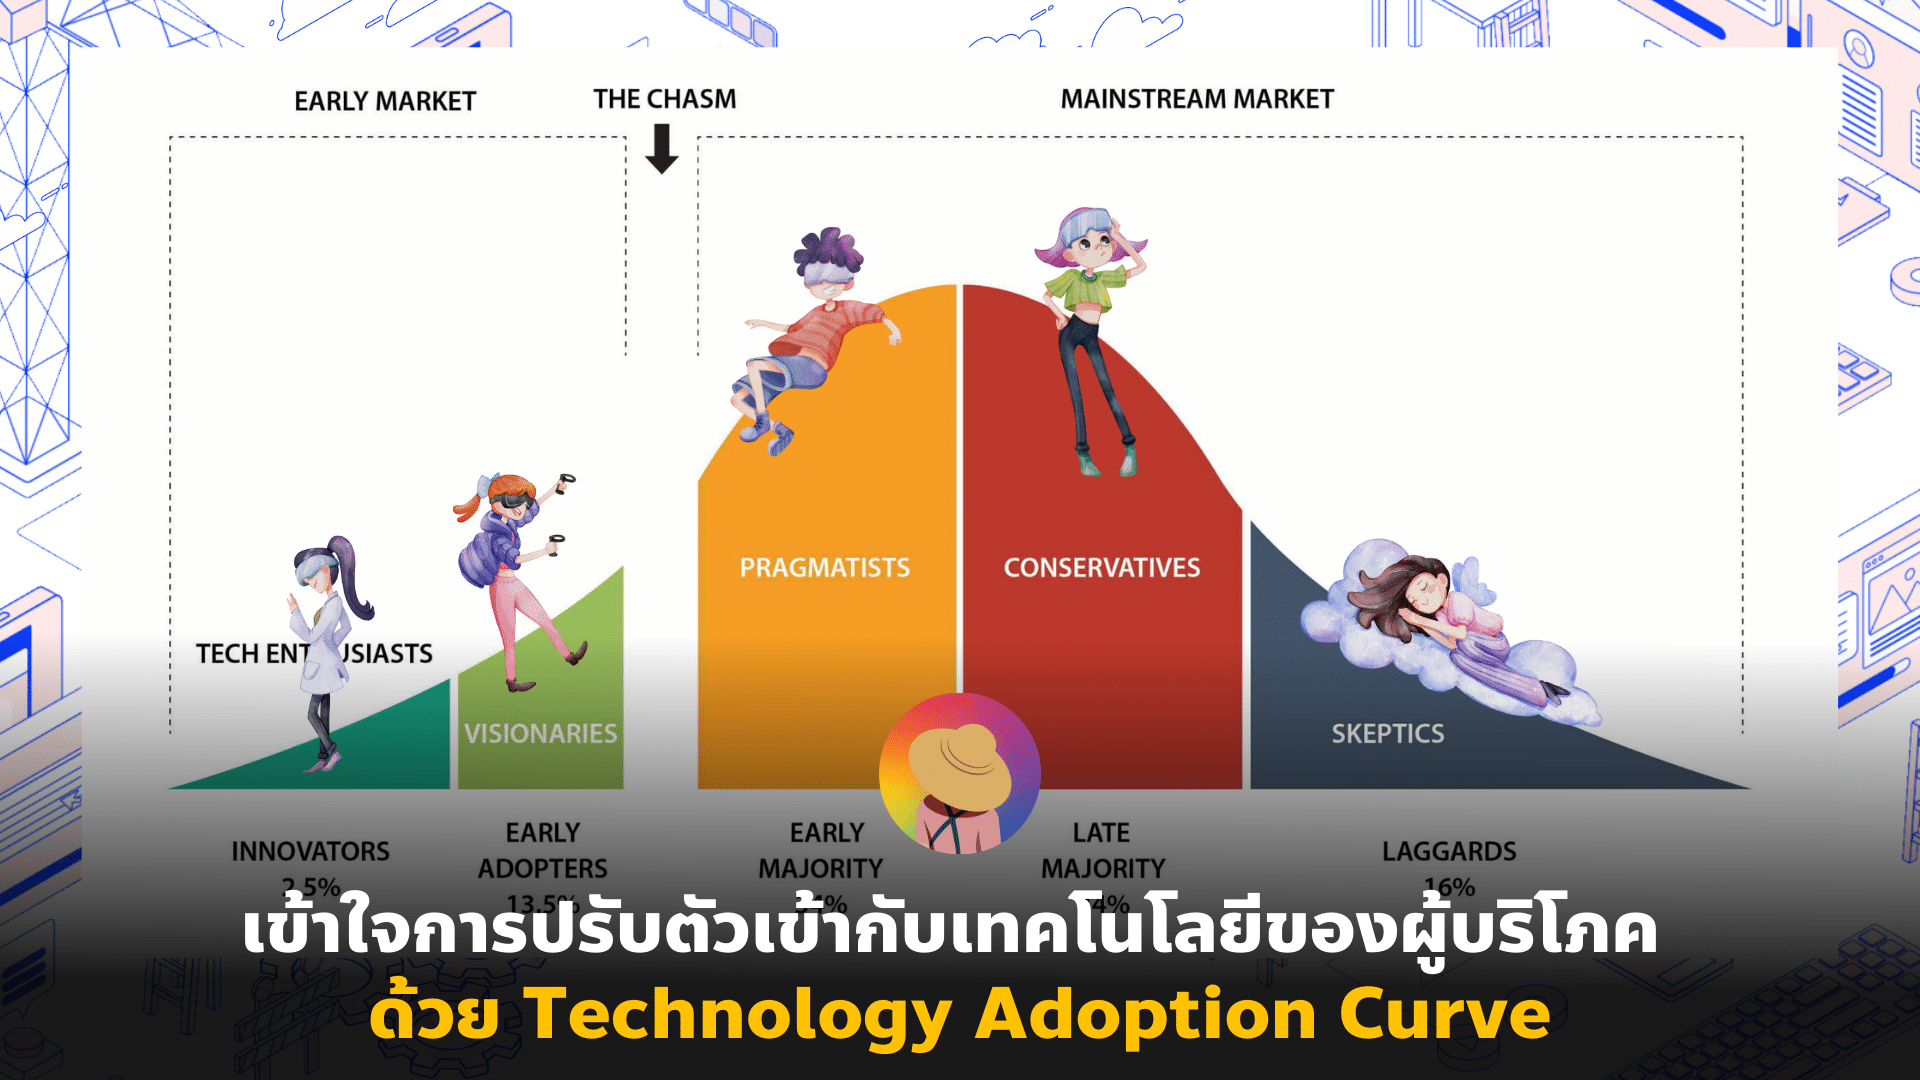 เข้าใจการปรับตัวเข้ากับเทคฯของผู้บริโภค ด้วย Technology Adoption Curve